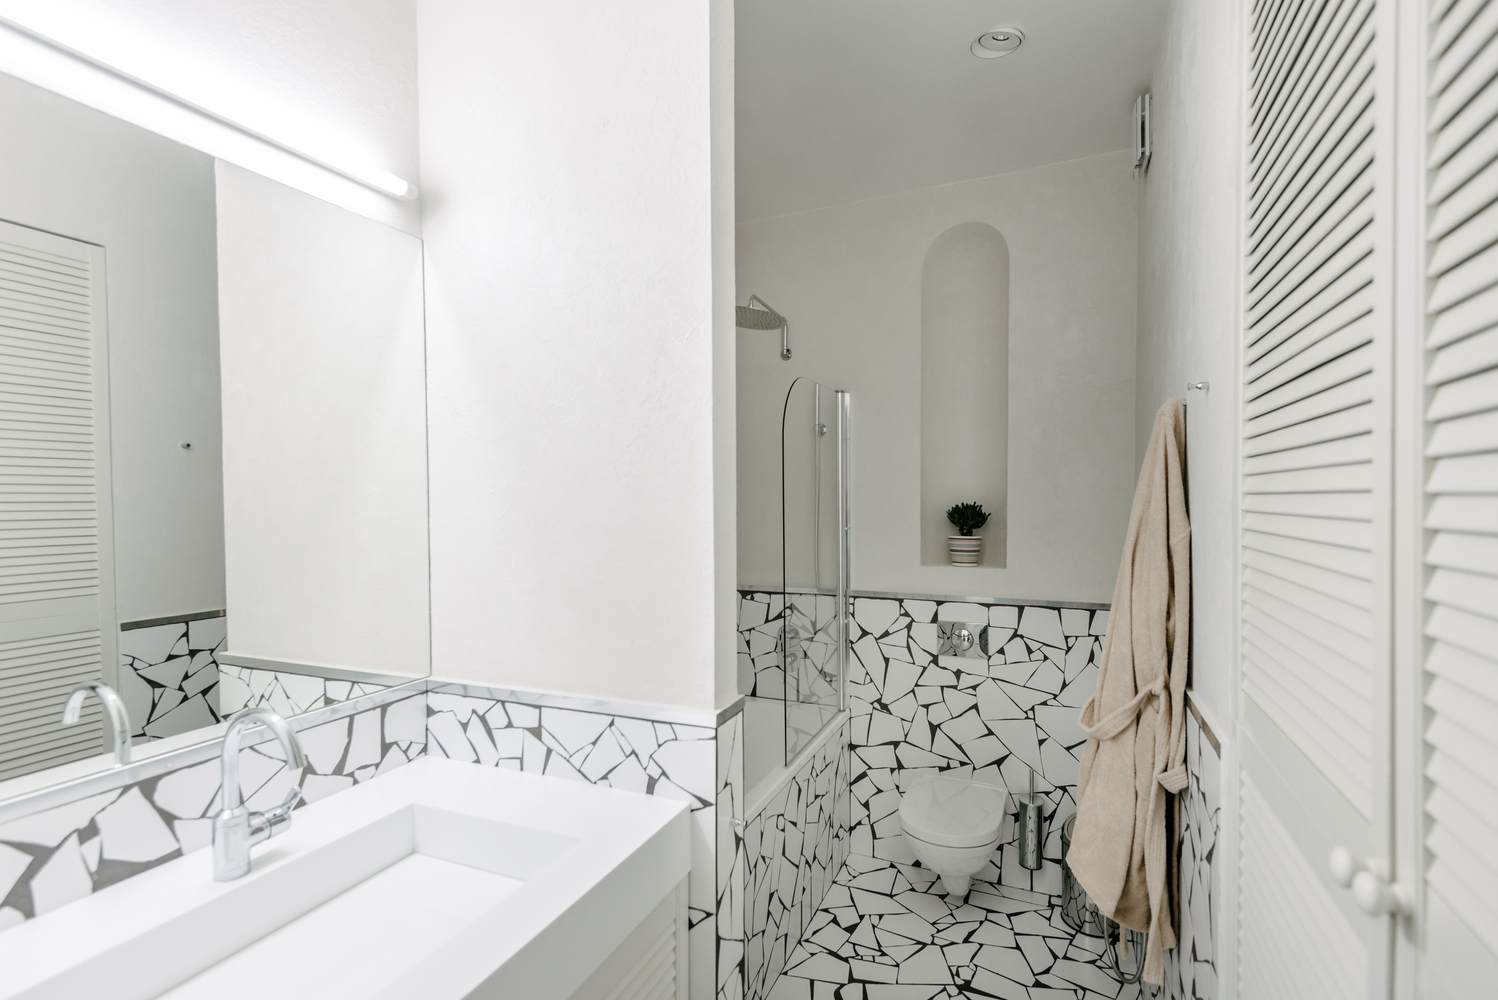 Gạch ốp tường và lát sàn phòng tắm cùng loại với lối vào và phòng bếp, tạo sự kết nối giữa các khu vực chức năng. Toilet gắn tường giúp tiết kiệm diện tích, phân vùng với bồn tắm nằm bằng cửa gương trong suốt.